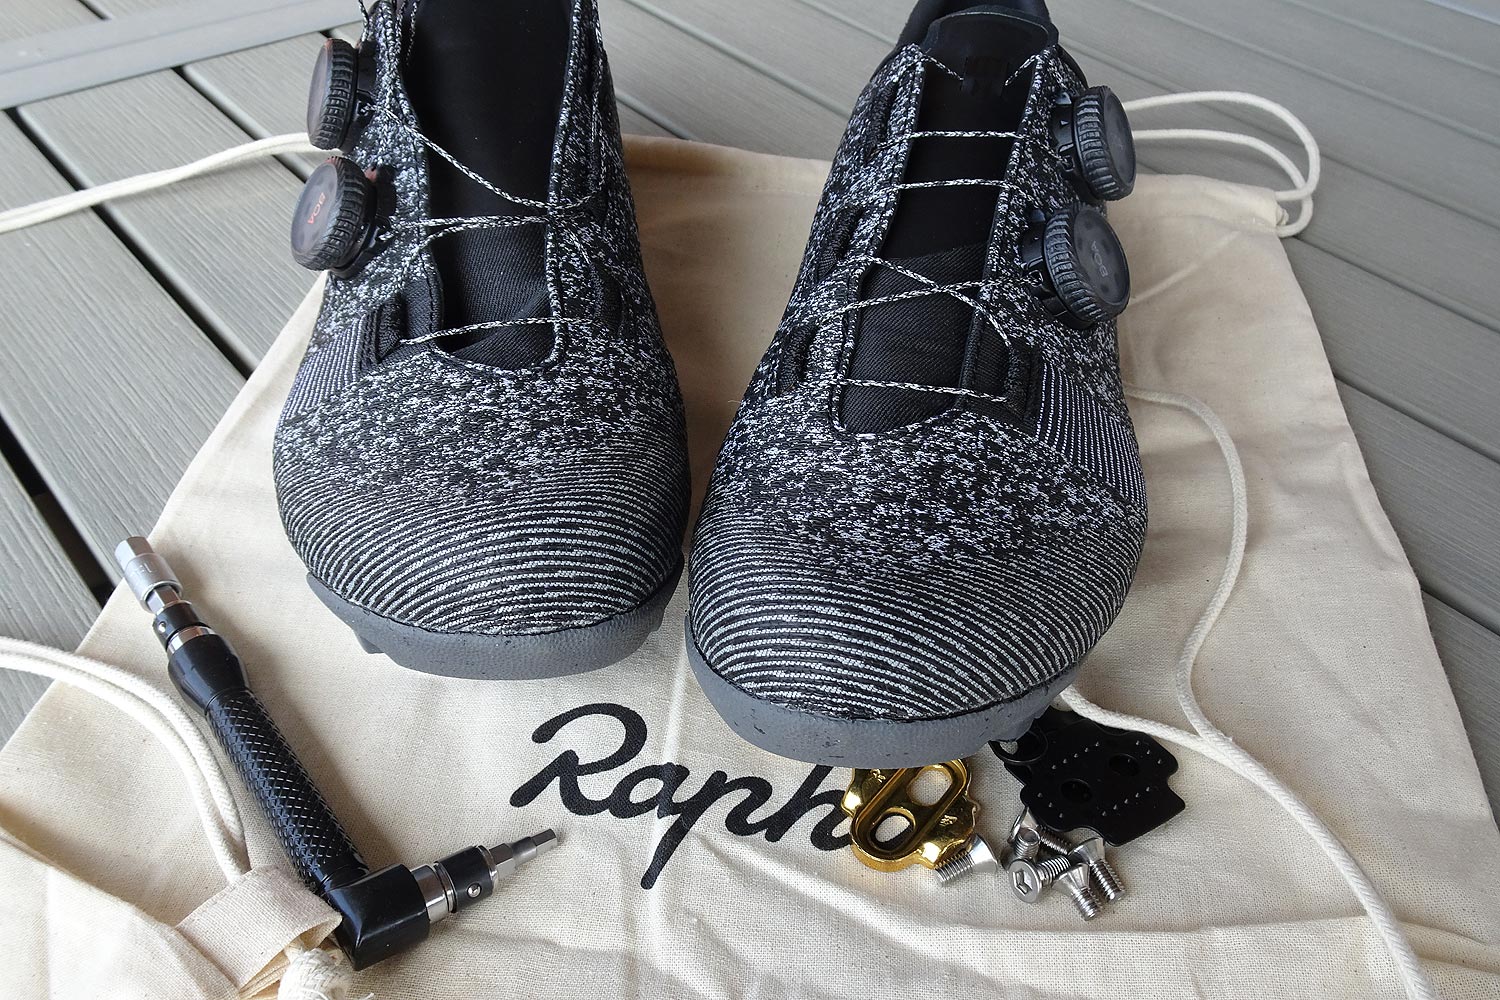 Test des chaussures gravel Rapha Explore Powerweave